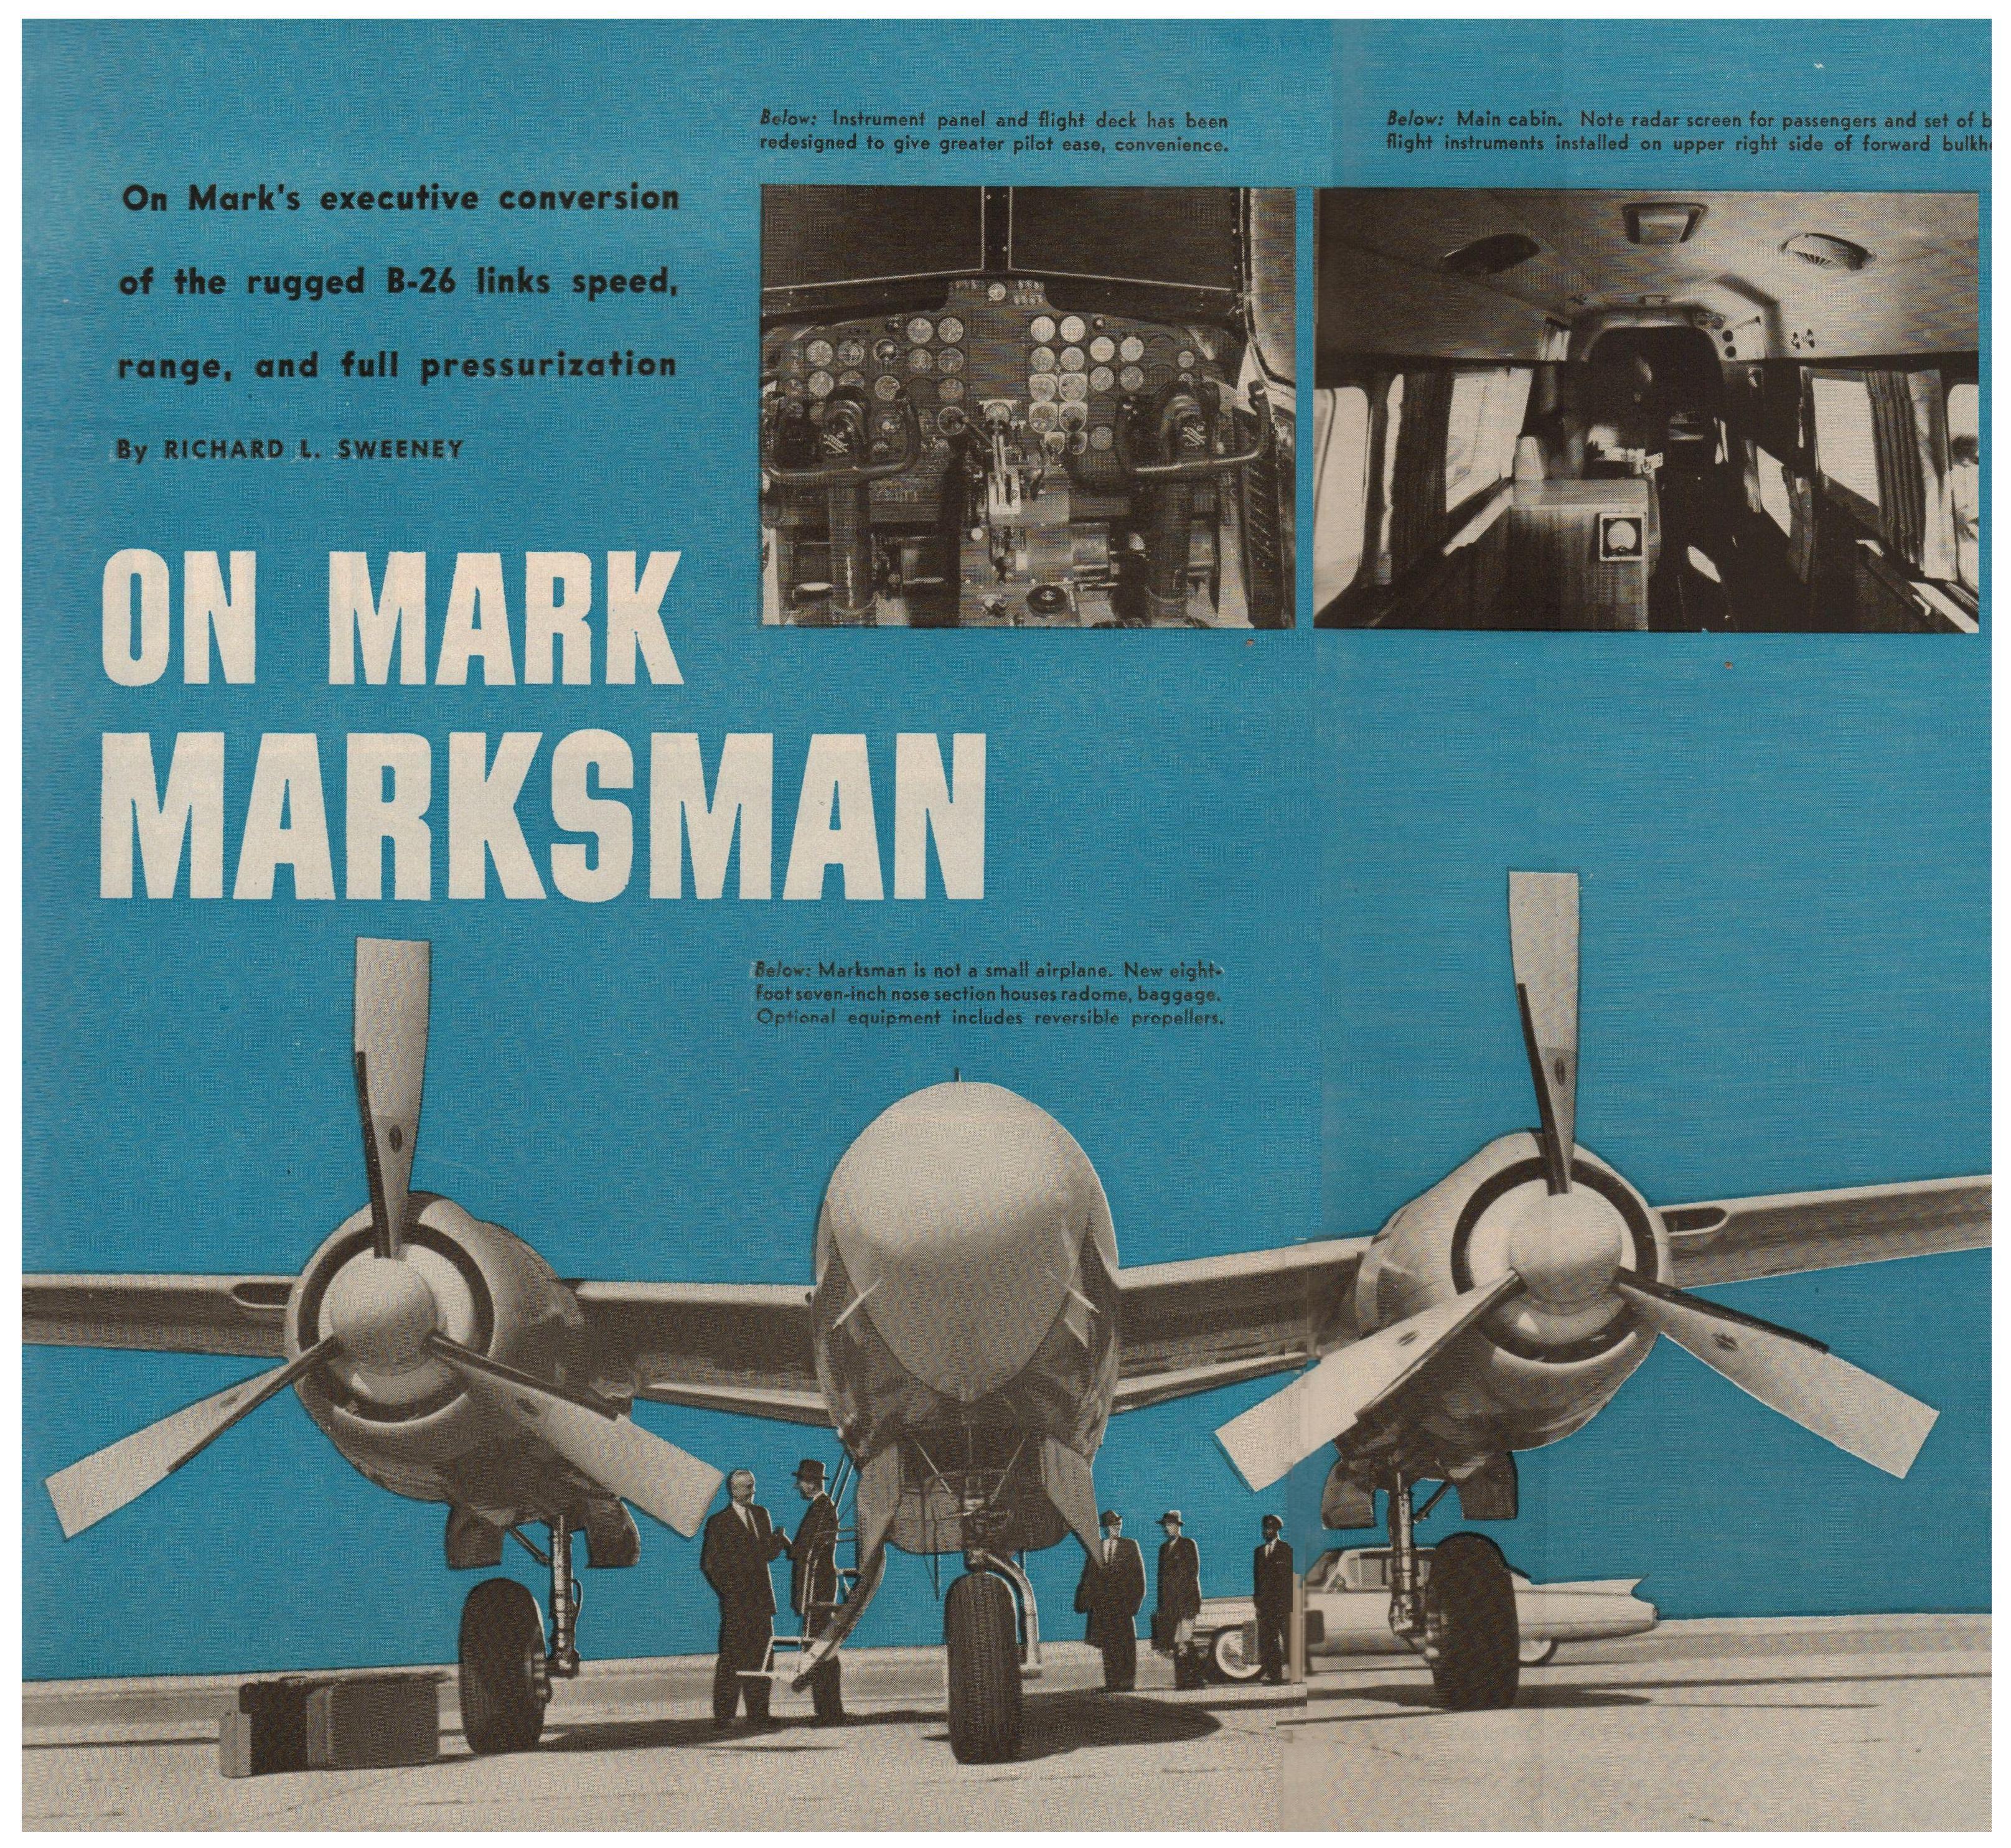 marksman1n100yflyingmarch19611xxxxzzzzzzz.jpg